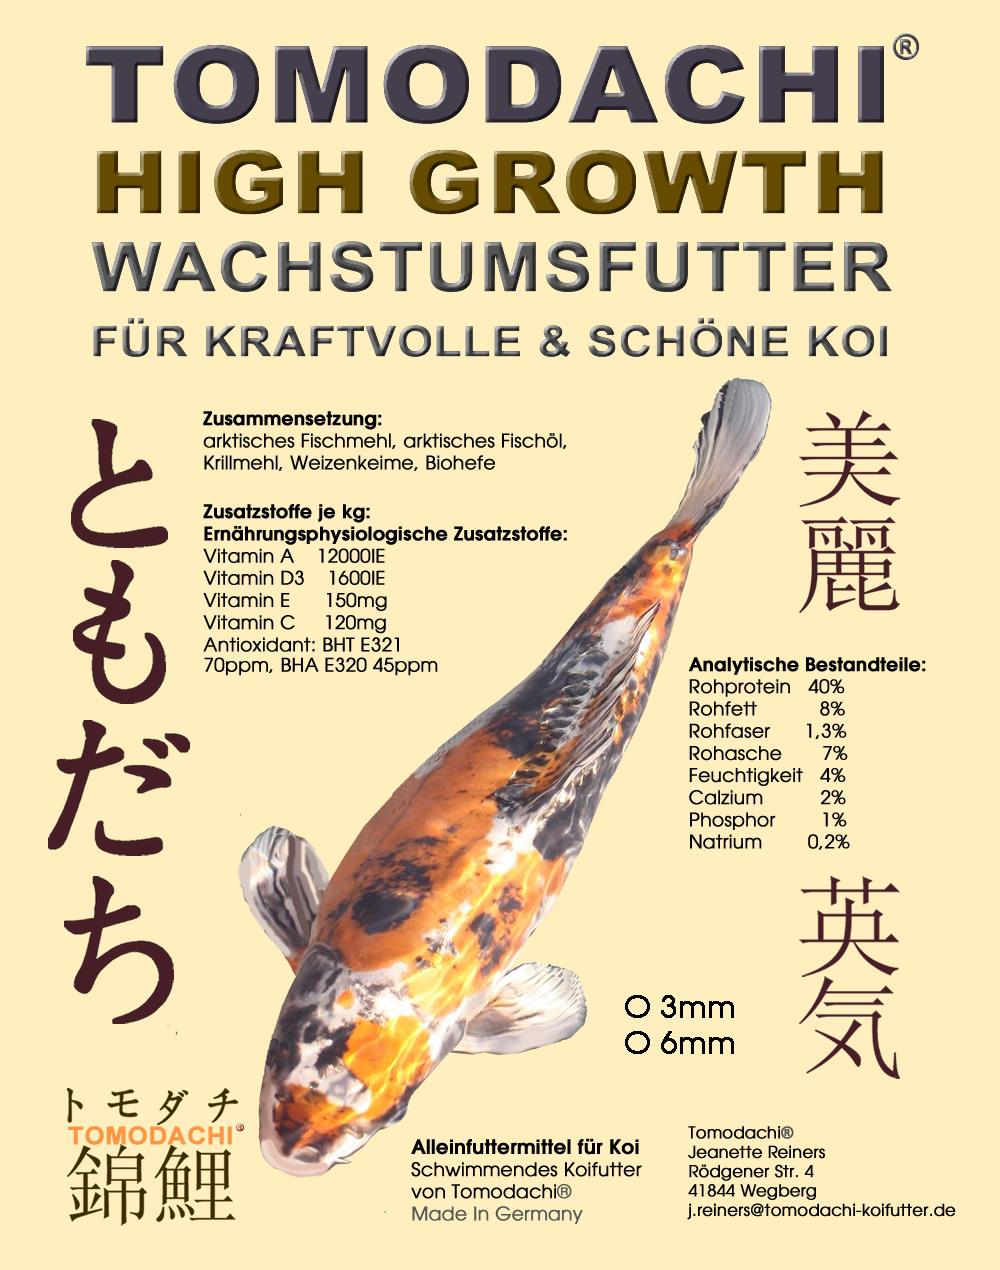 Tomodachi High Growth mit wertvollen arktischen Fischmehlen und Fischölen - das Premium Wachstums Koifutter für kraftvolle und schöne Koi